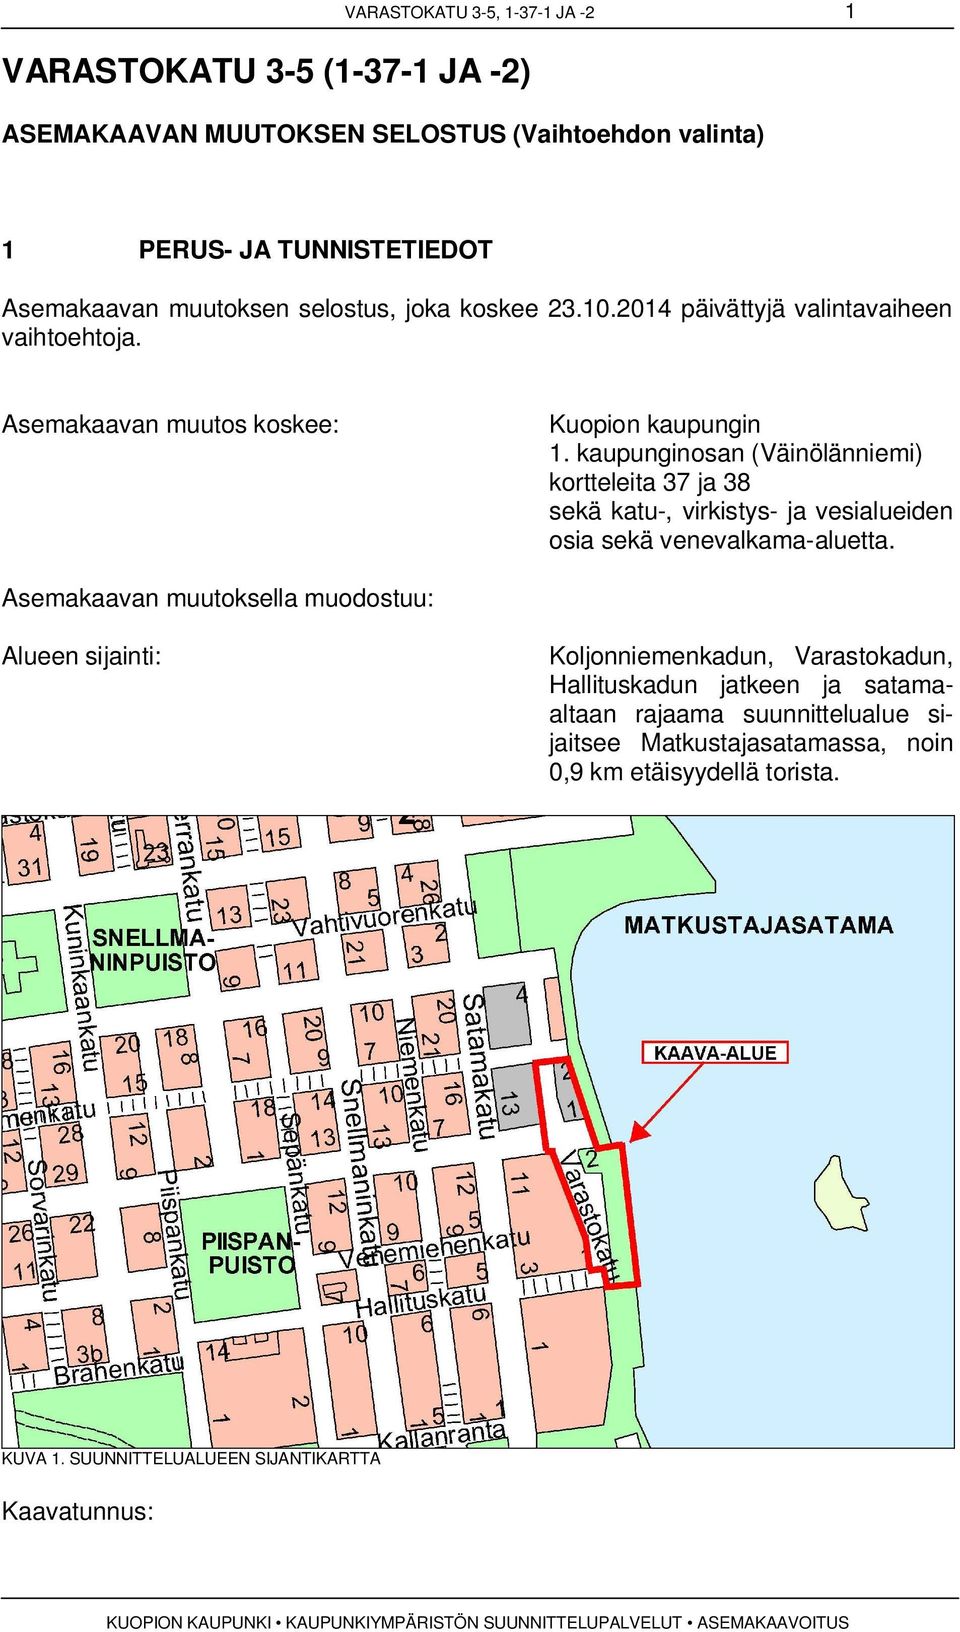 kaupunginosan (Väinölänniemi) kortteleita 37 ja 38 sekä katu-, virkistys- ja vesialueiden osia sekä venevalkama-aluetta.